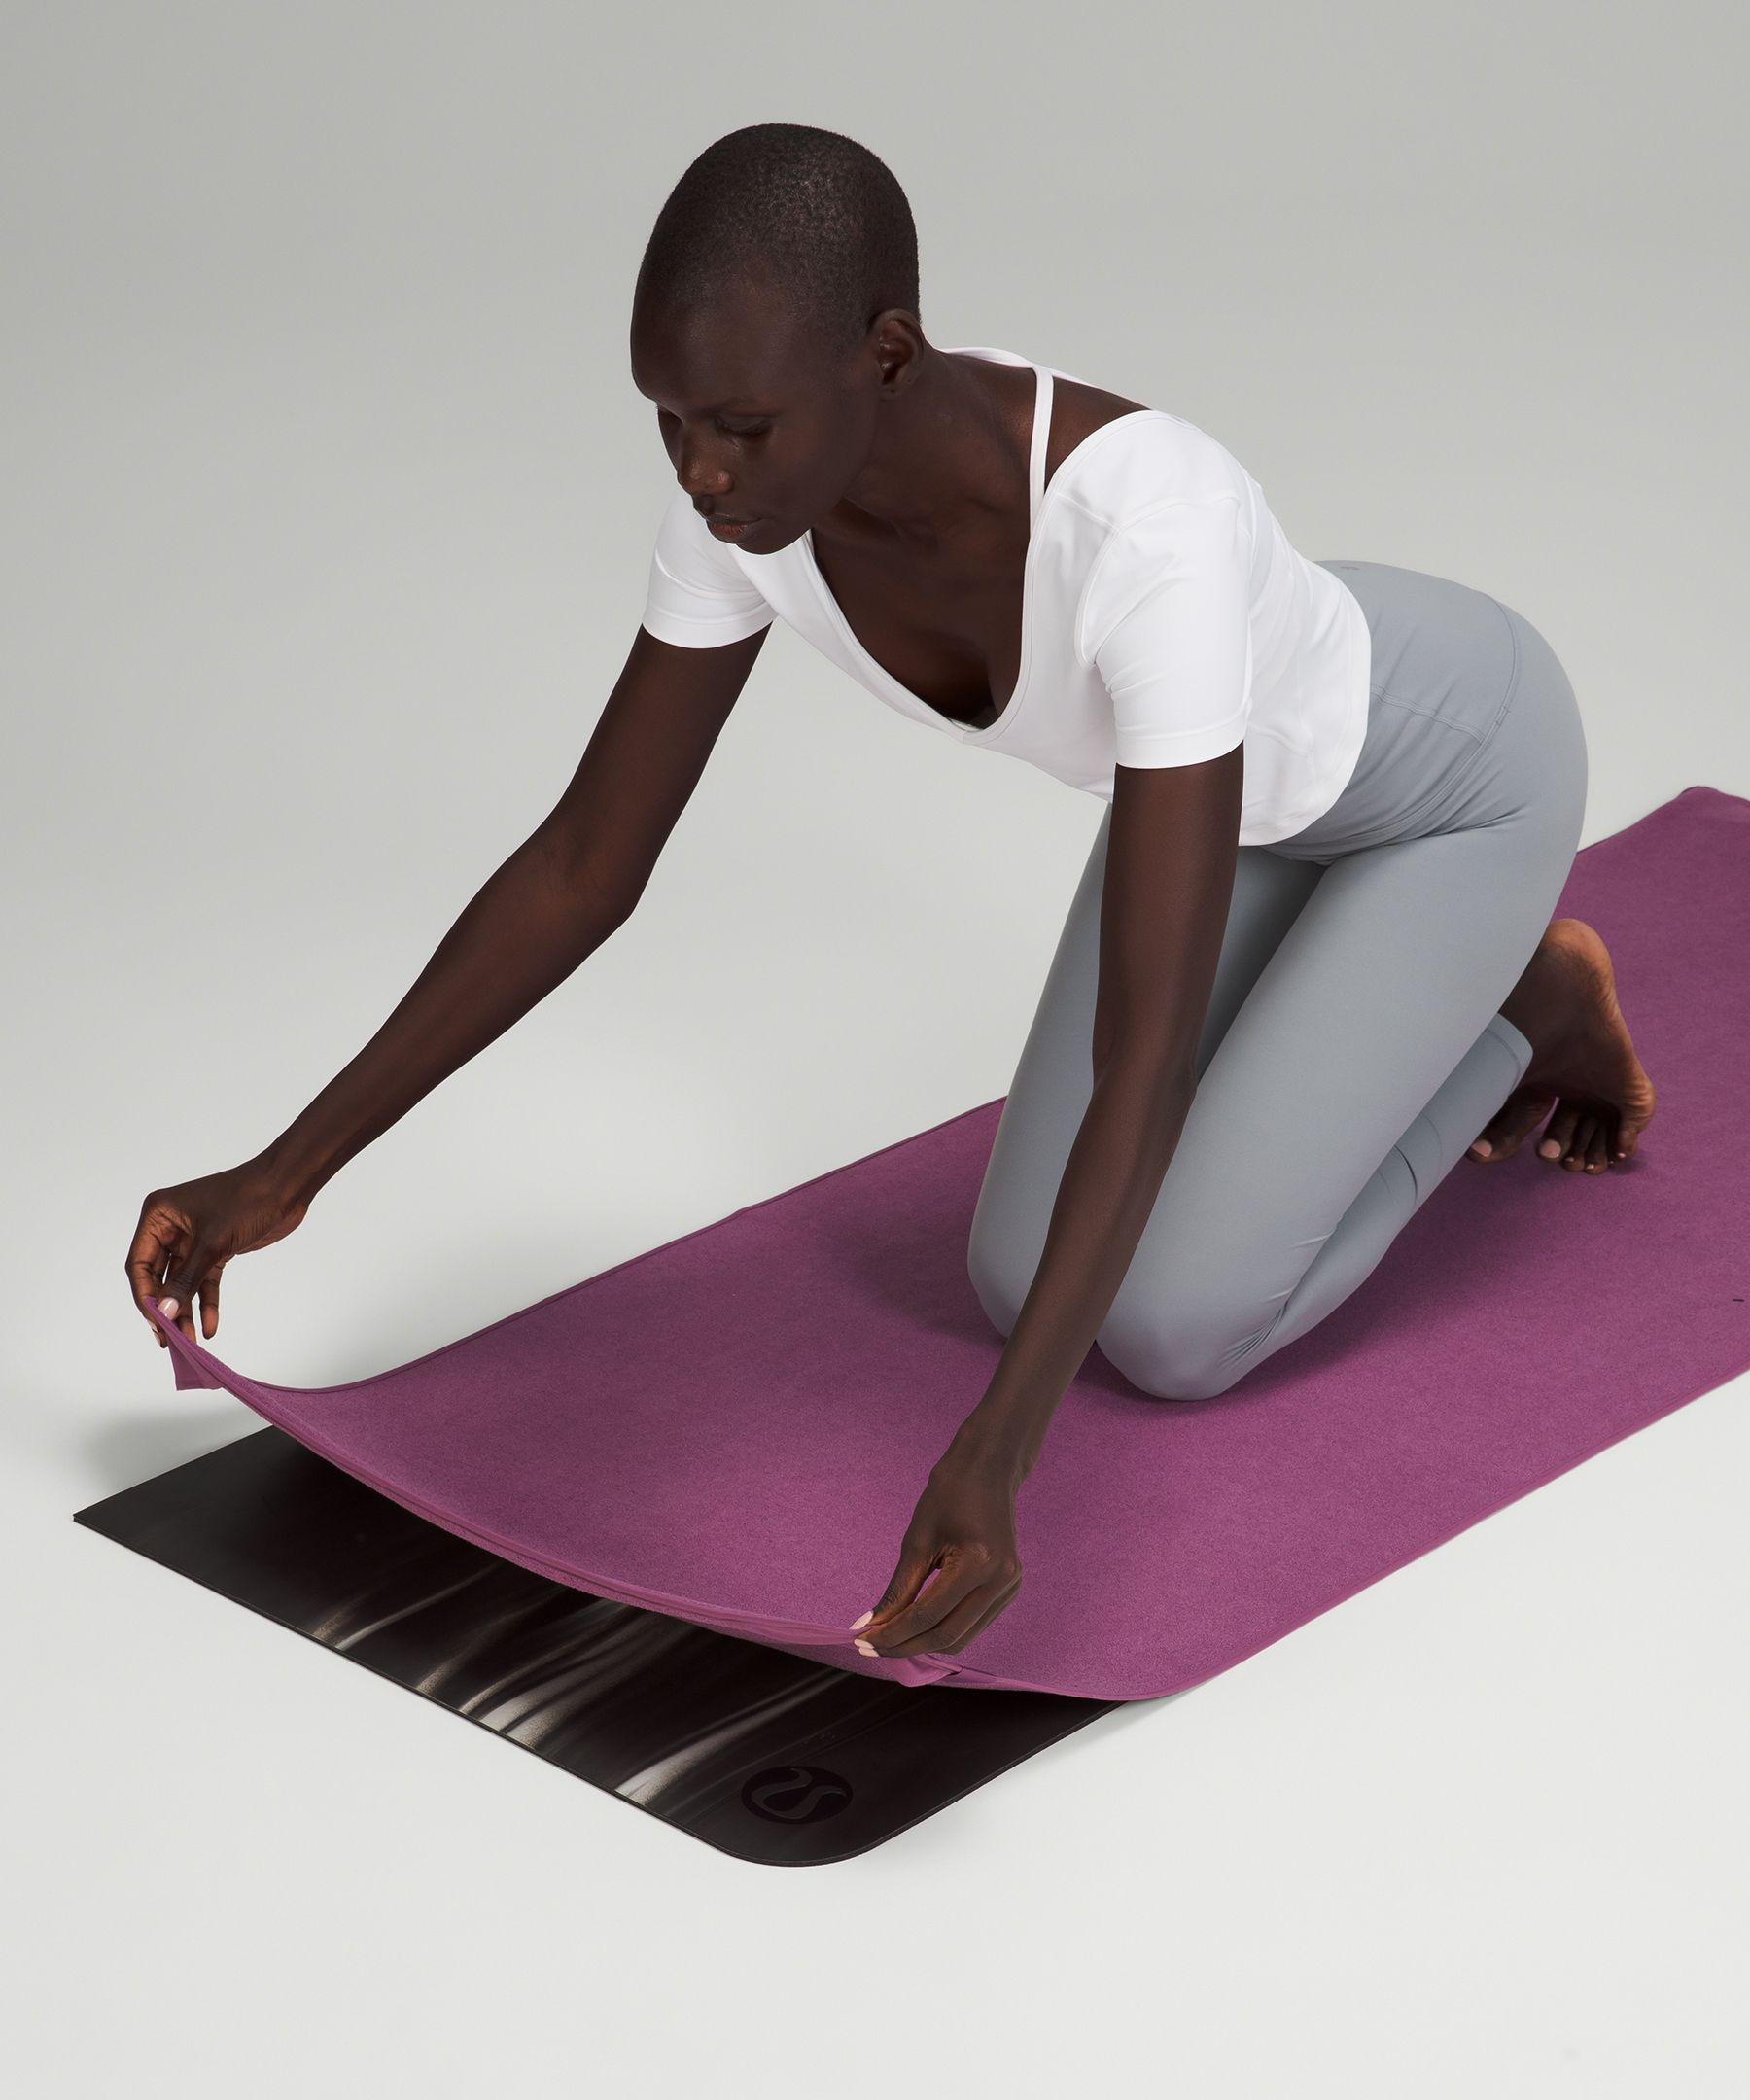 Best Yoga Mat Towel - Mandala Black - Yoga Mat Towel with grip for